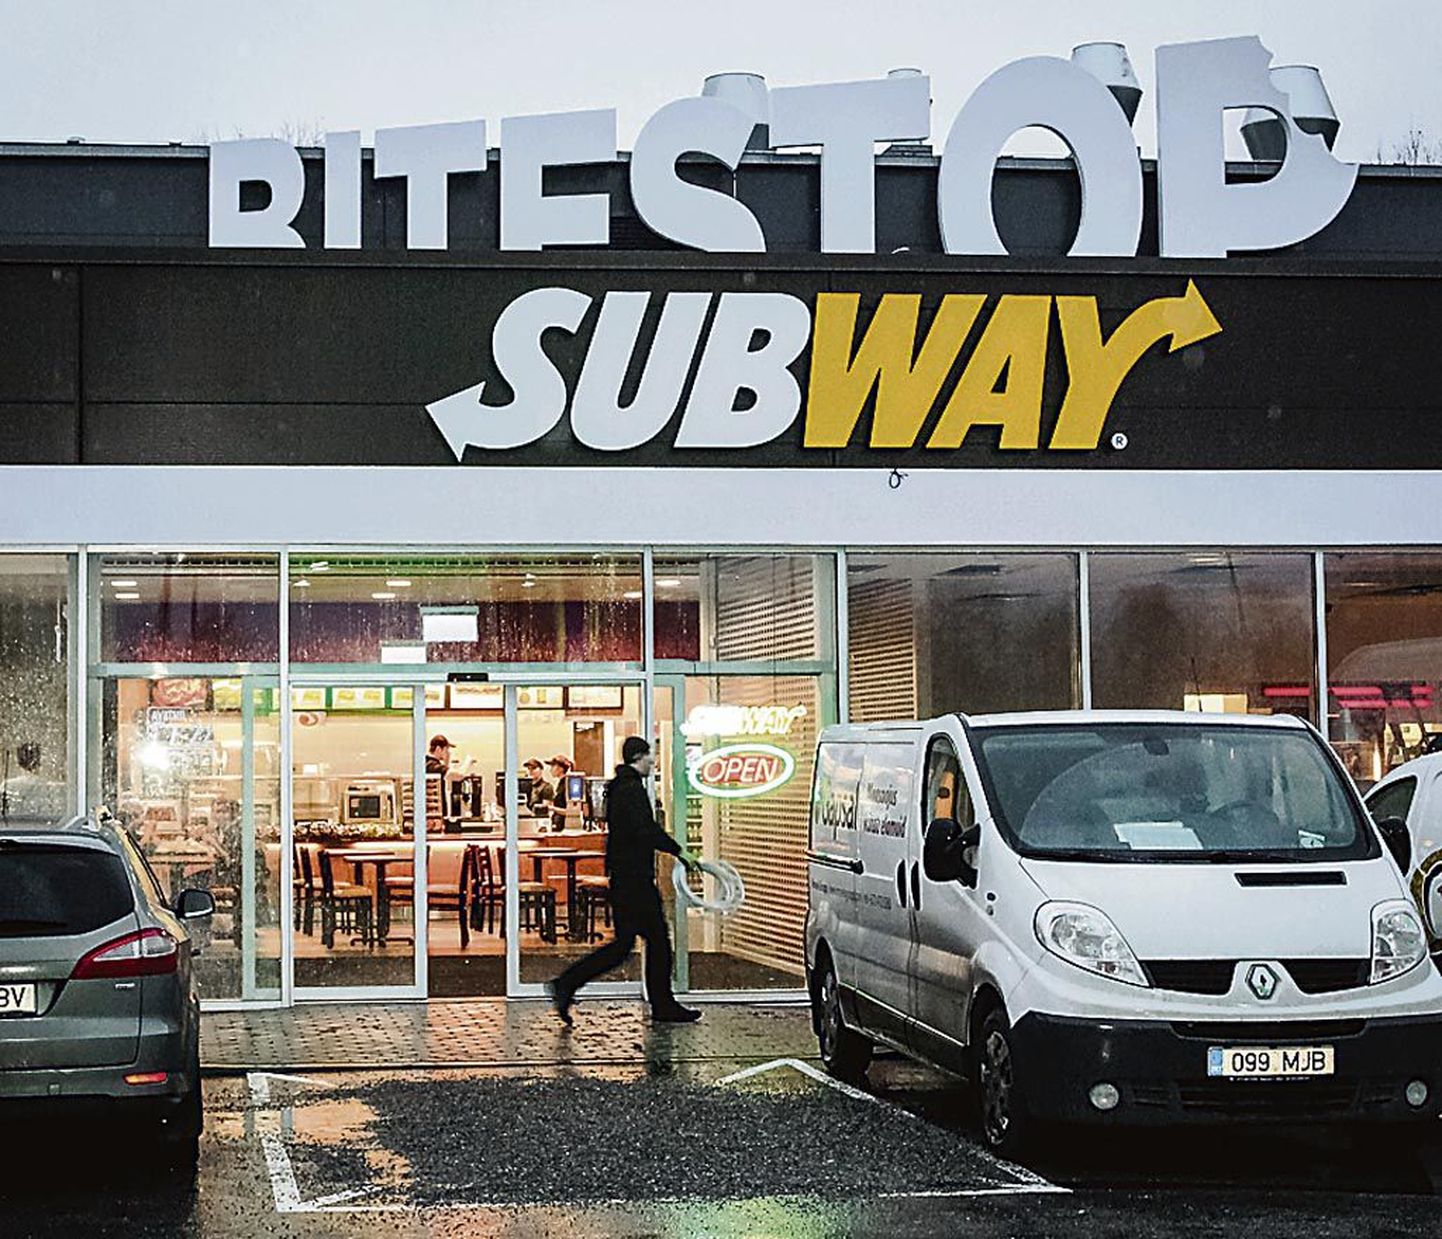 Bitestop vahetas omanikku, samuti kolis ärihoonest välja võileivakohvik Subway.